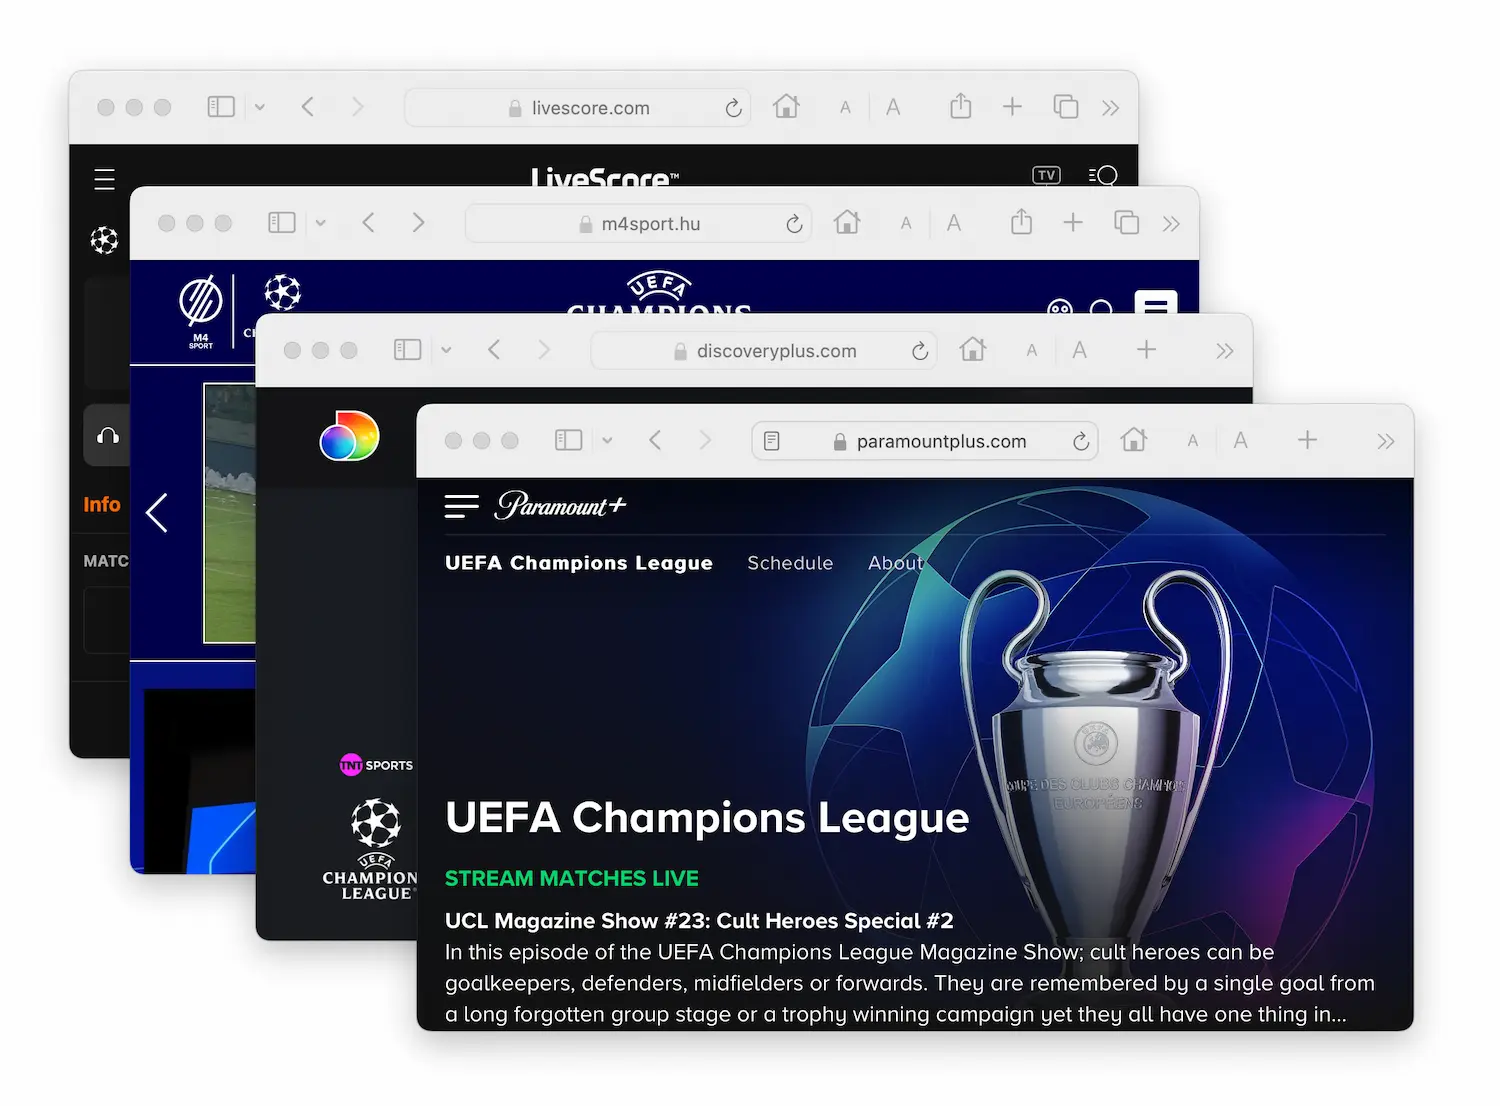 Un collage con ventanas de diferentes páginas de streaming que emiten la UEFA Champions League.